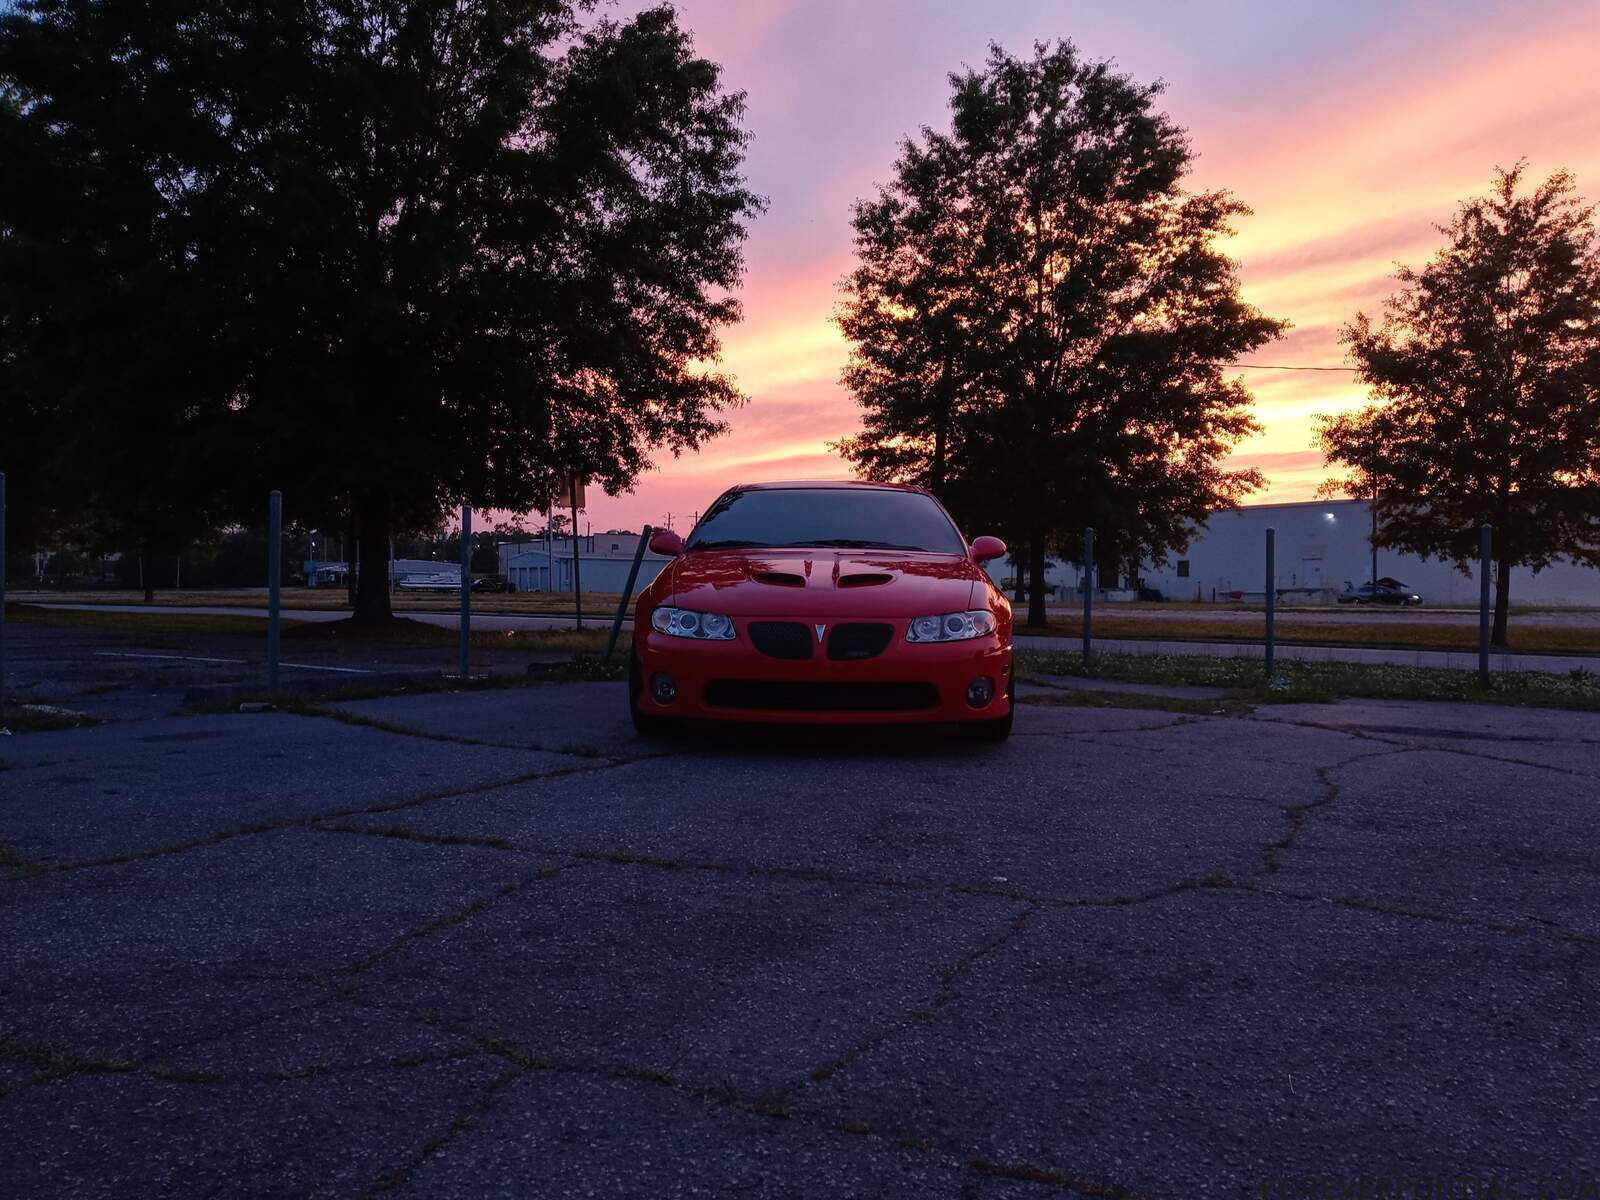 GTO sunset